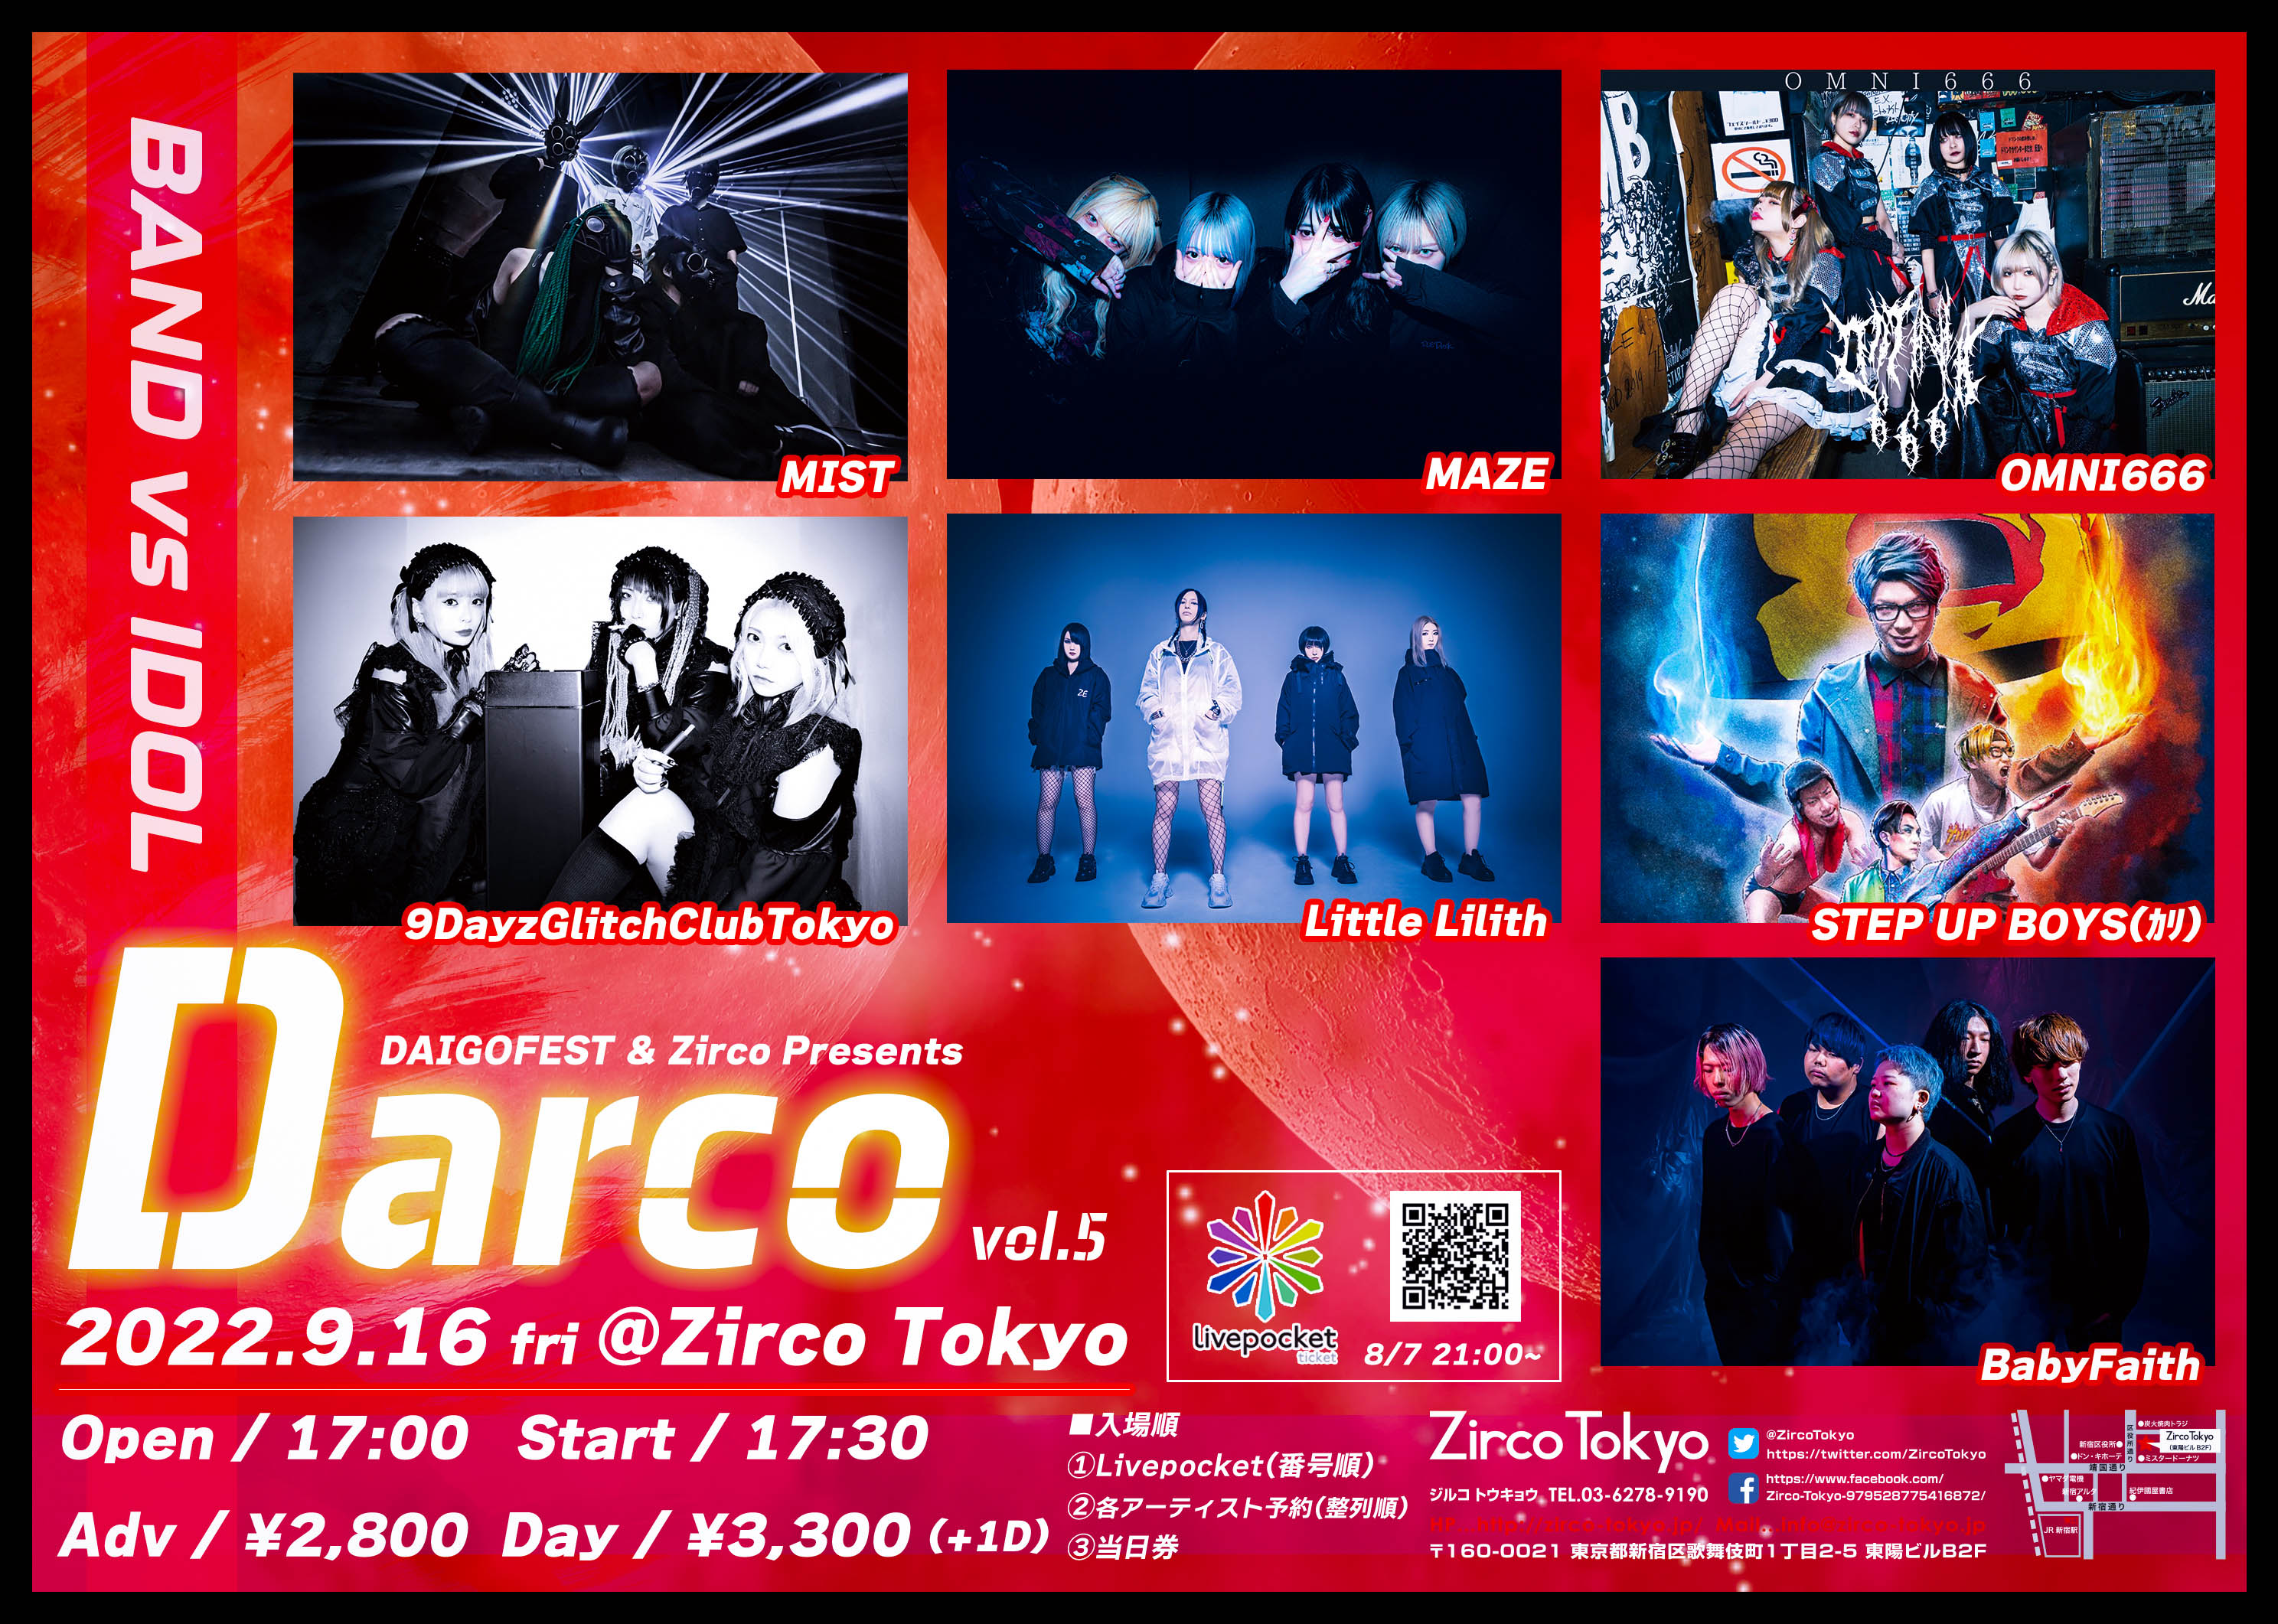 DAIGOFEST & Zirco Tokyo Presents 「Darco」vol.5